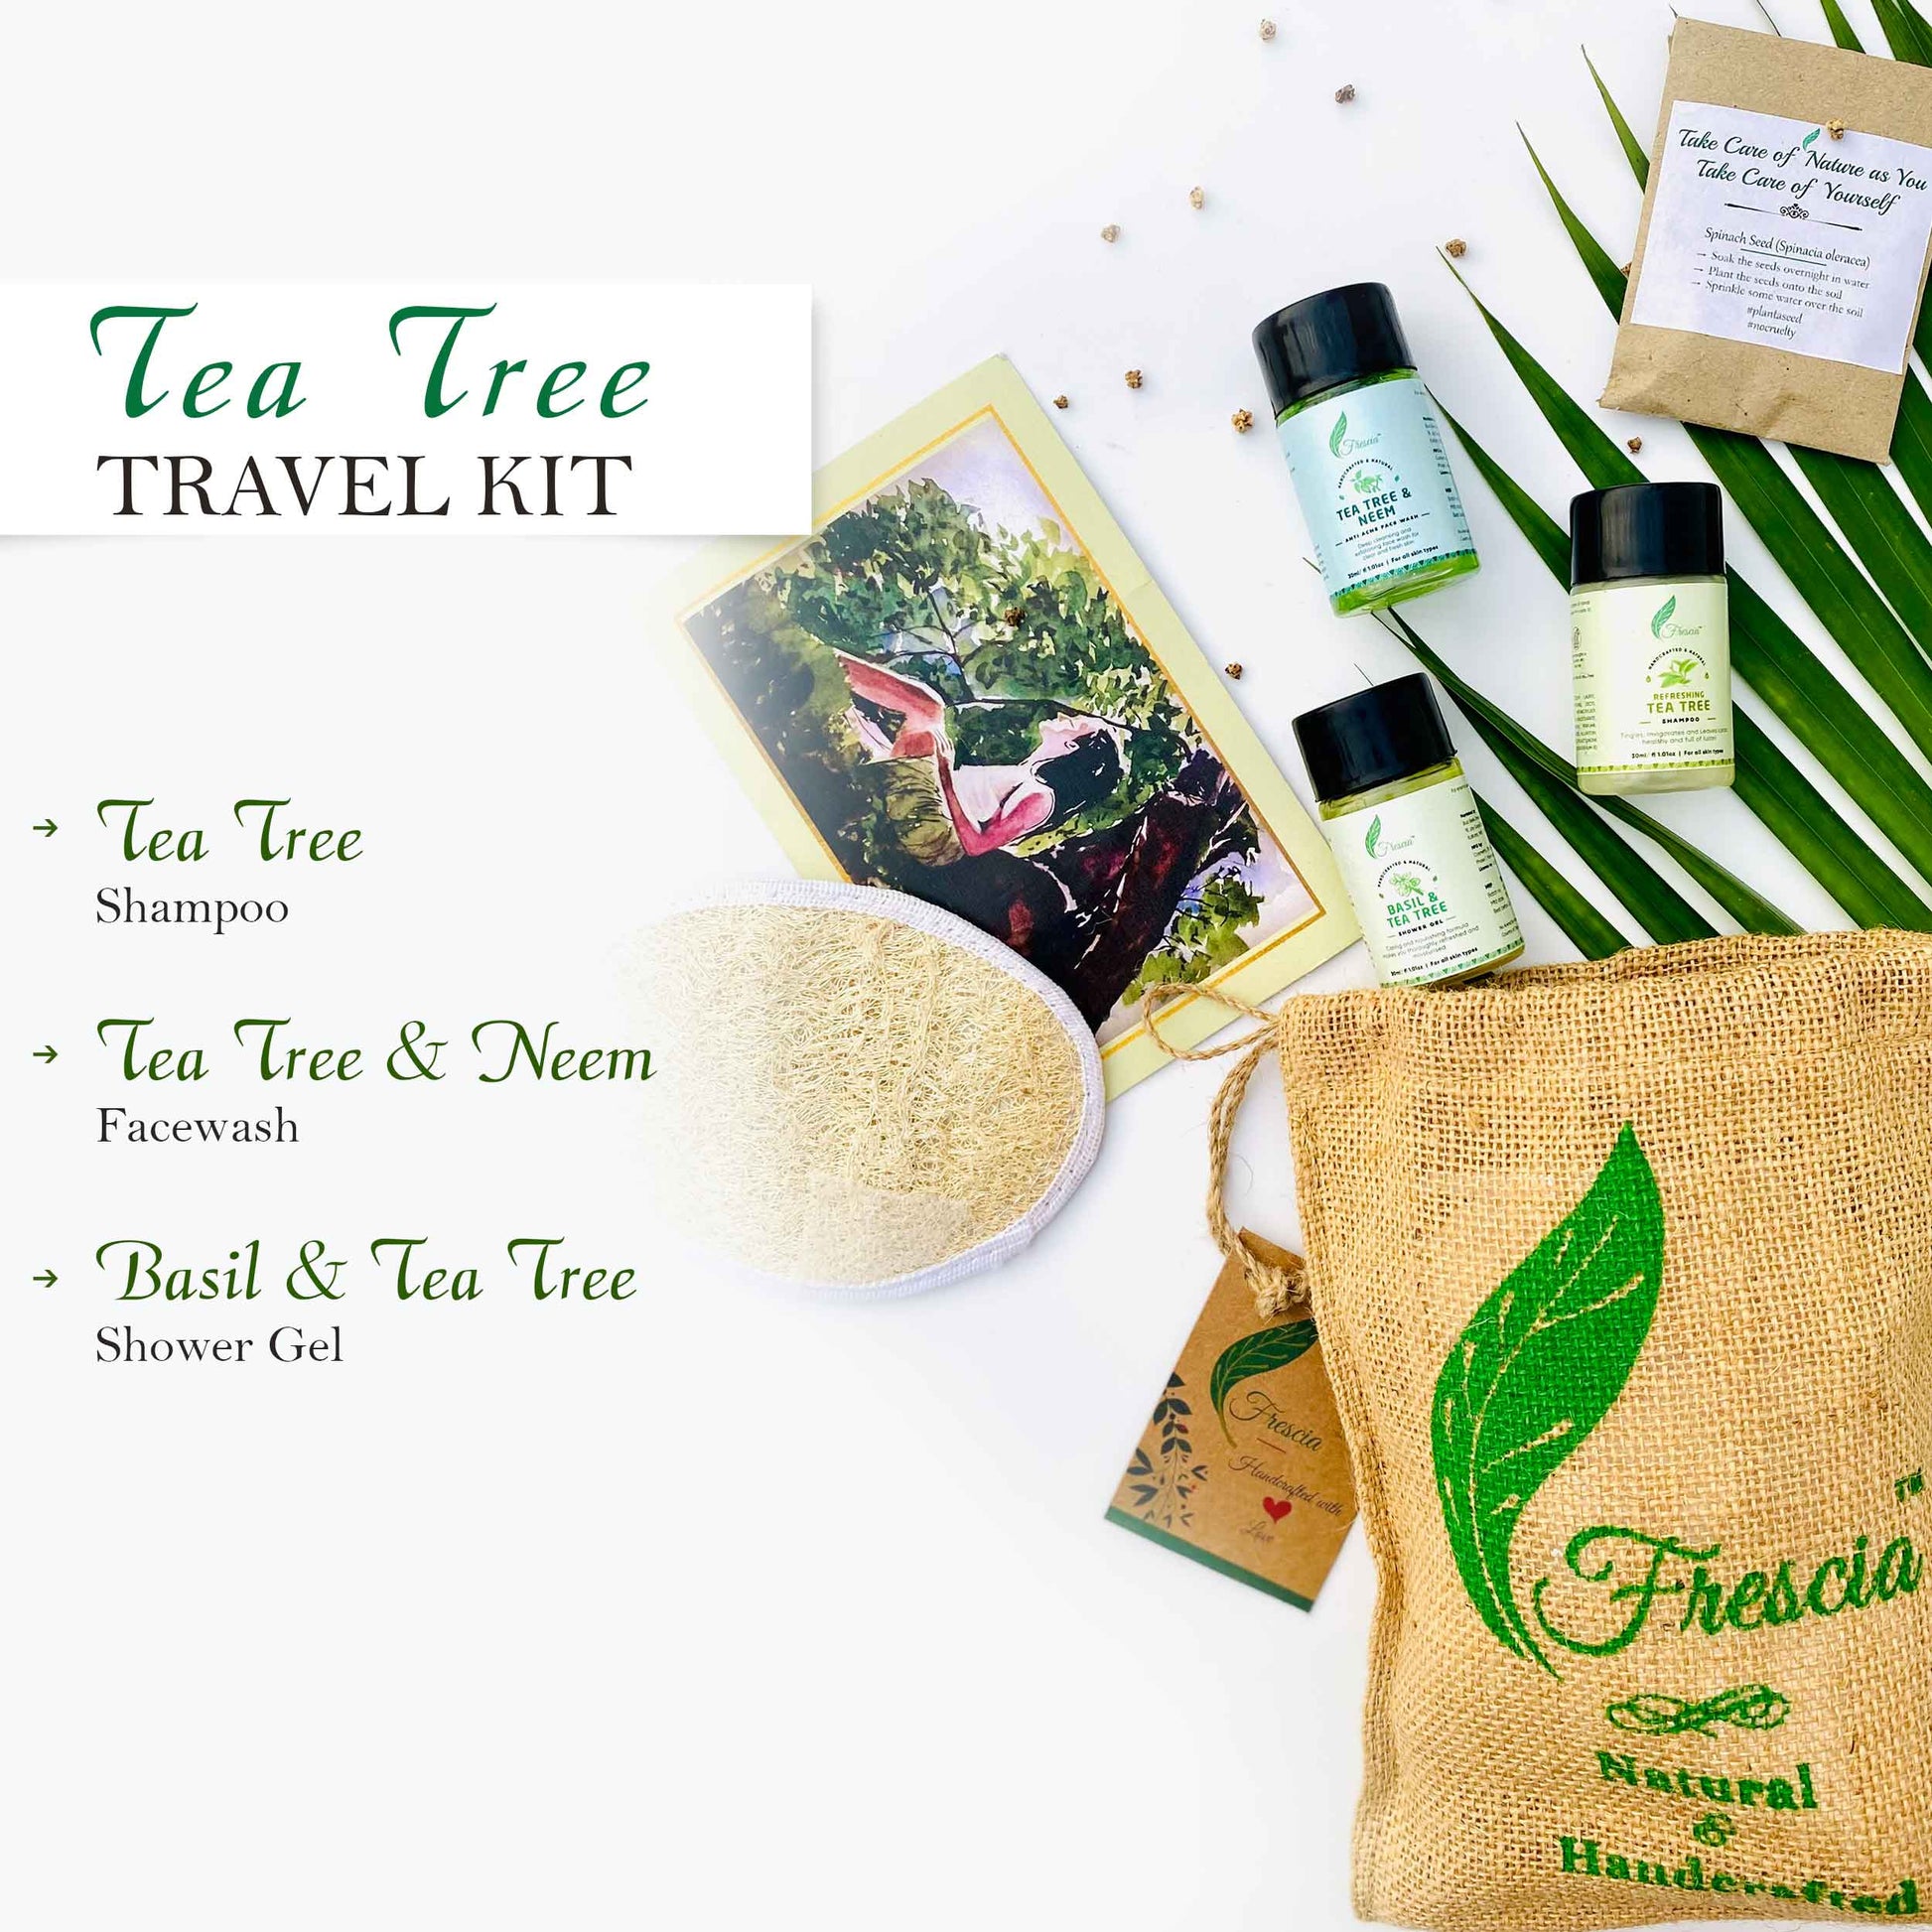 Tea Tree Travel Kit